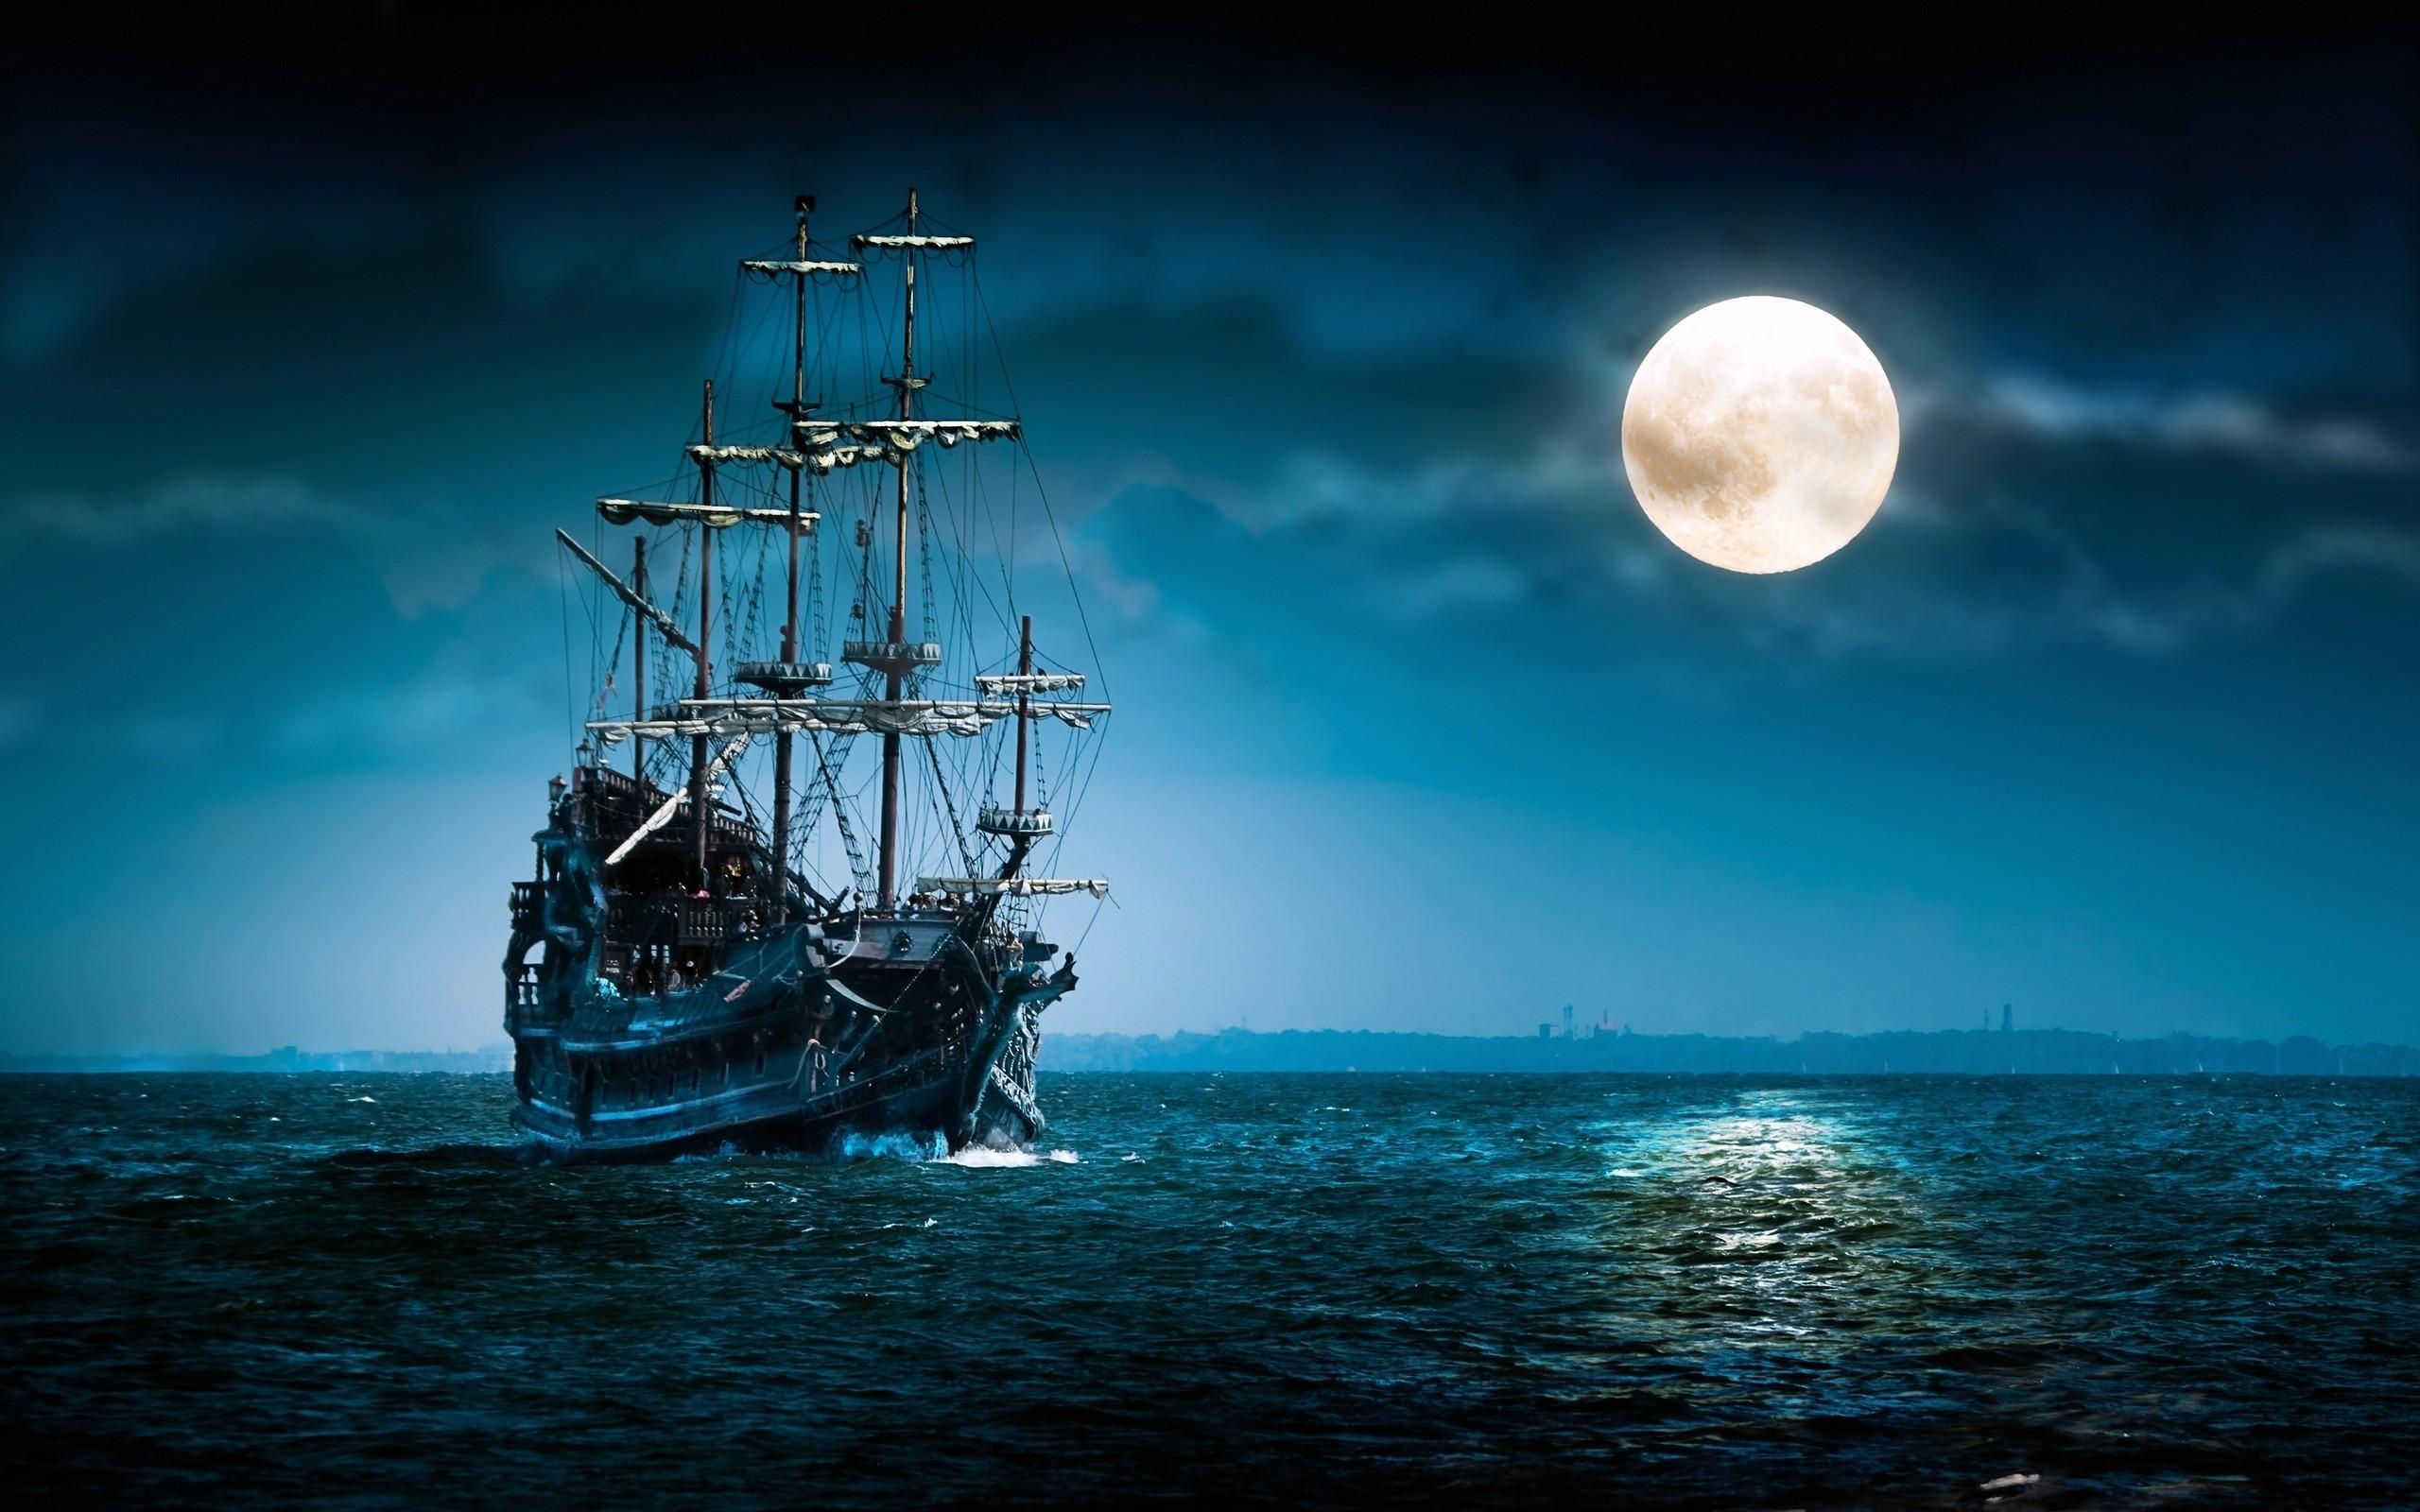 加勒比海盗_中型商船 由 土顽毛 创作 | 乐艺leewiART CG精英艺术社区，汇聚优秀CG艺术作品